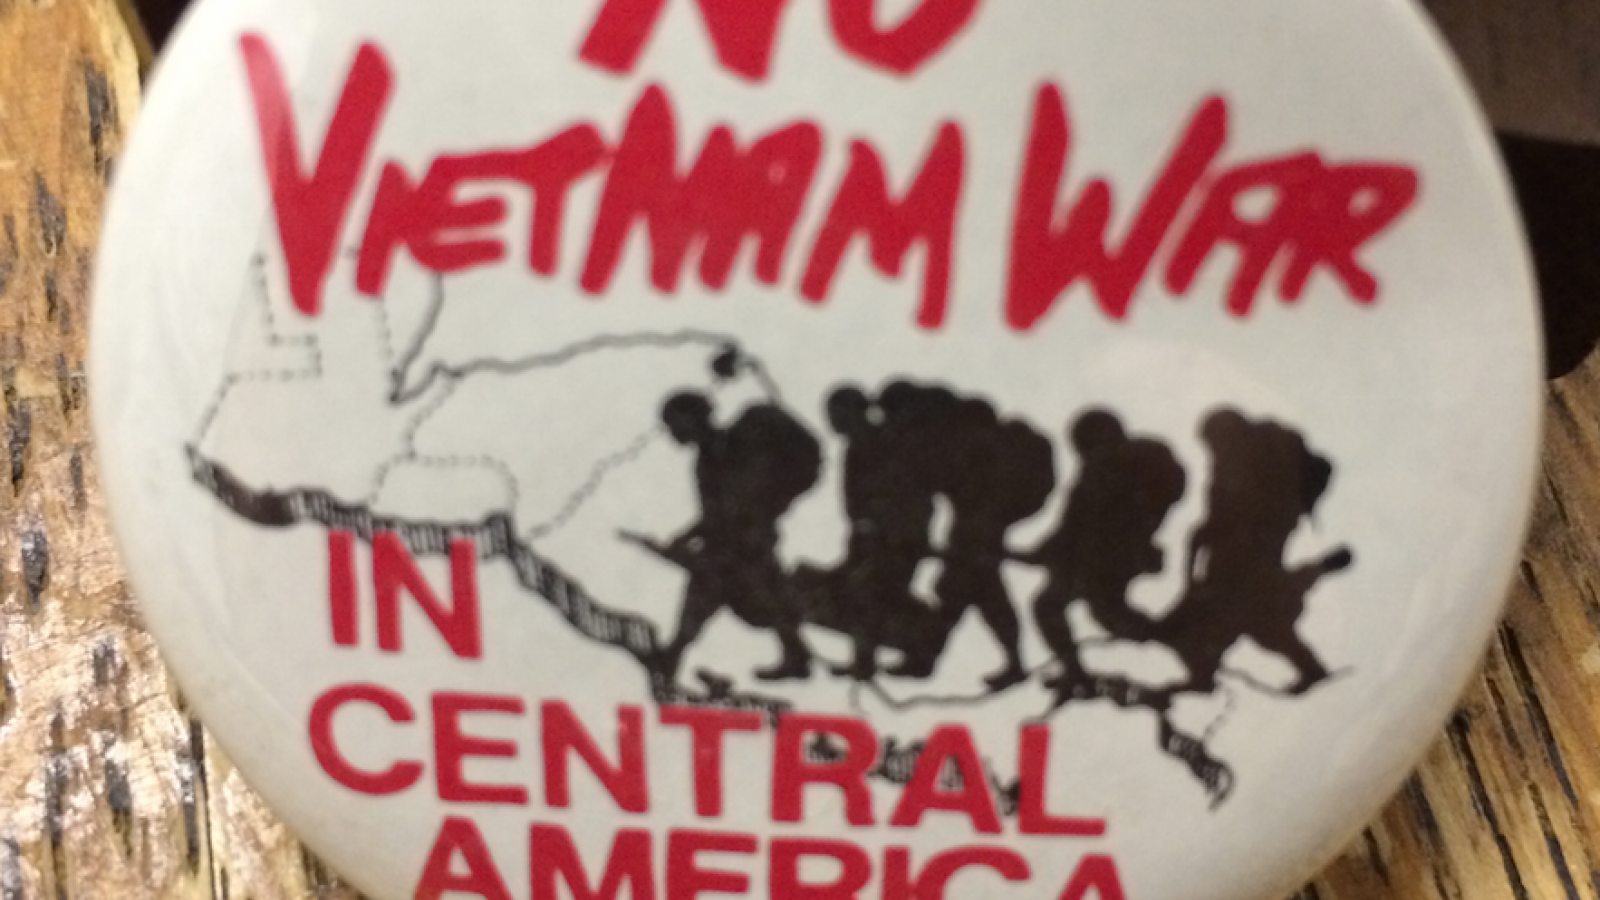 Button - "No Vietnam War in Central America"